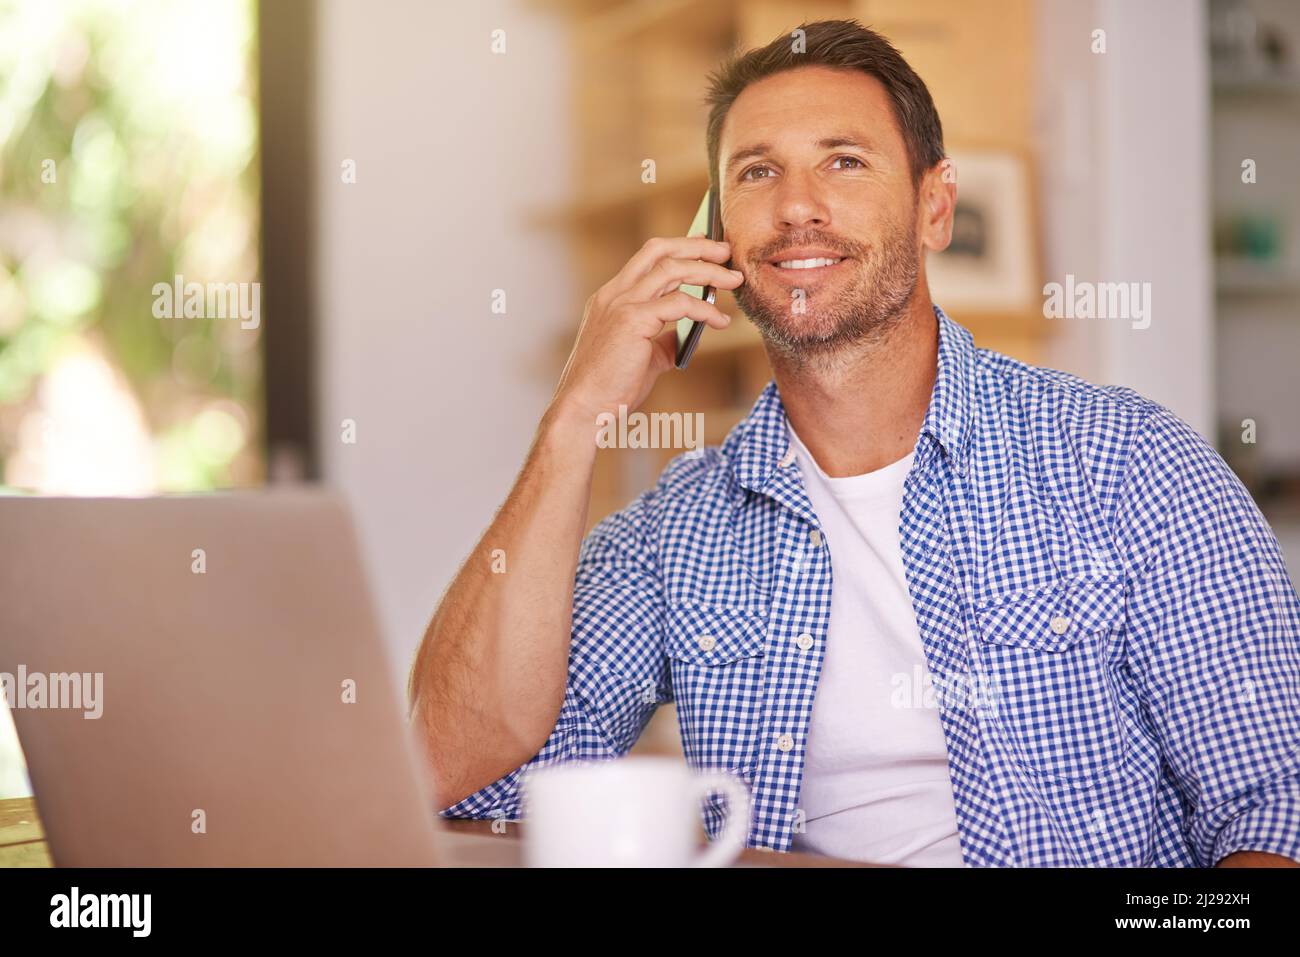 Clients von zu Hause aus anrufen. Aufnahme eines jungen Mannes, der von zu Hause aus arbeitet. Stockfoto